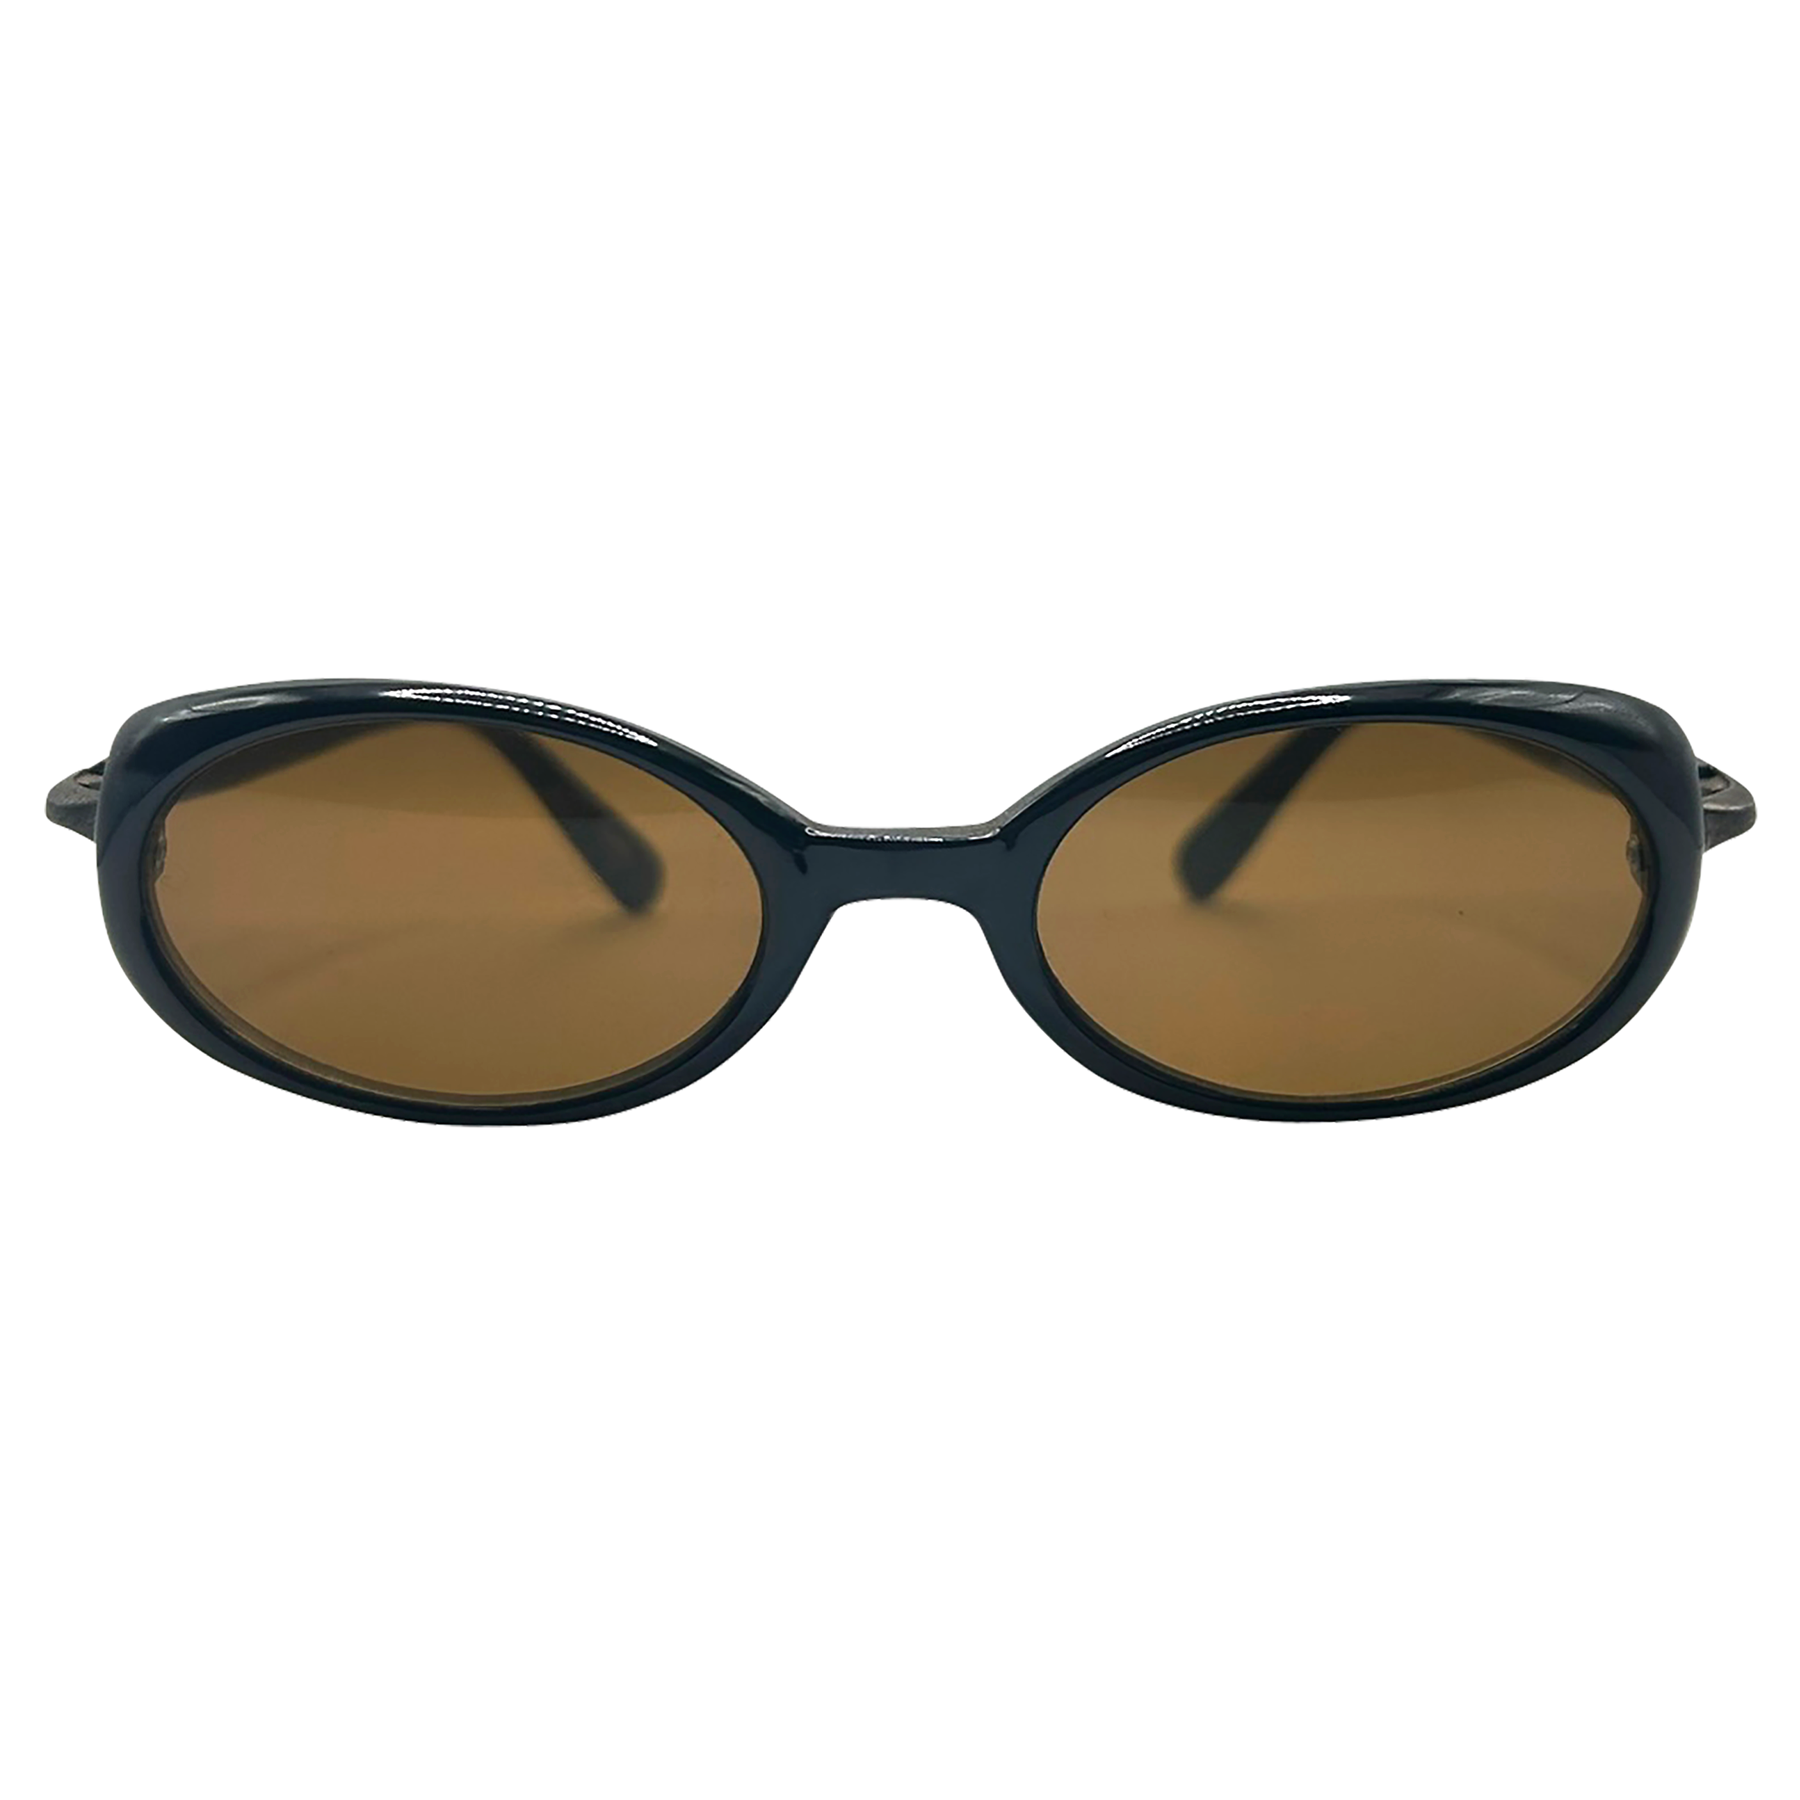 TWERP Black/Brown Oval Sunglasses